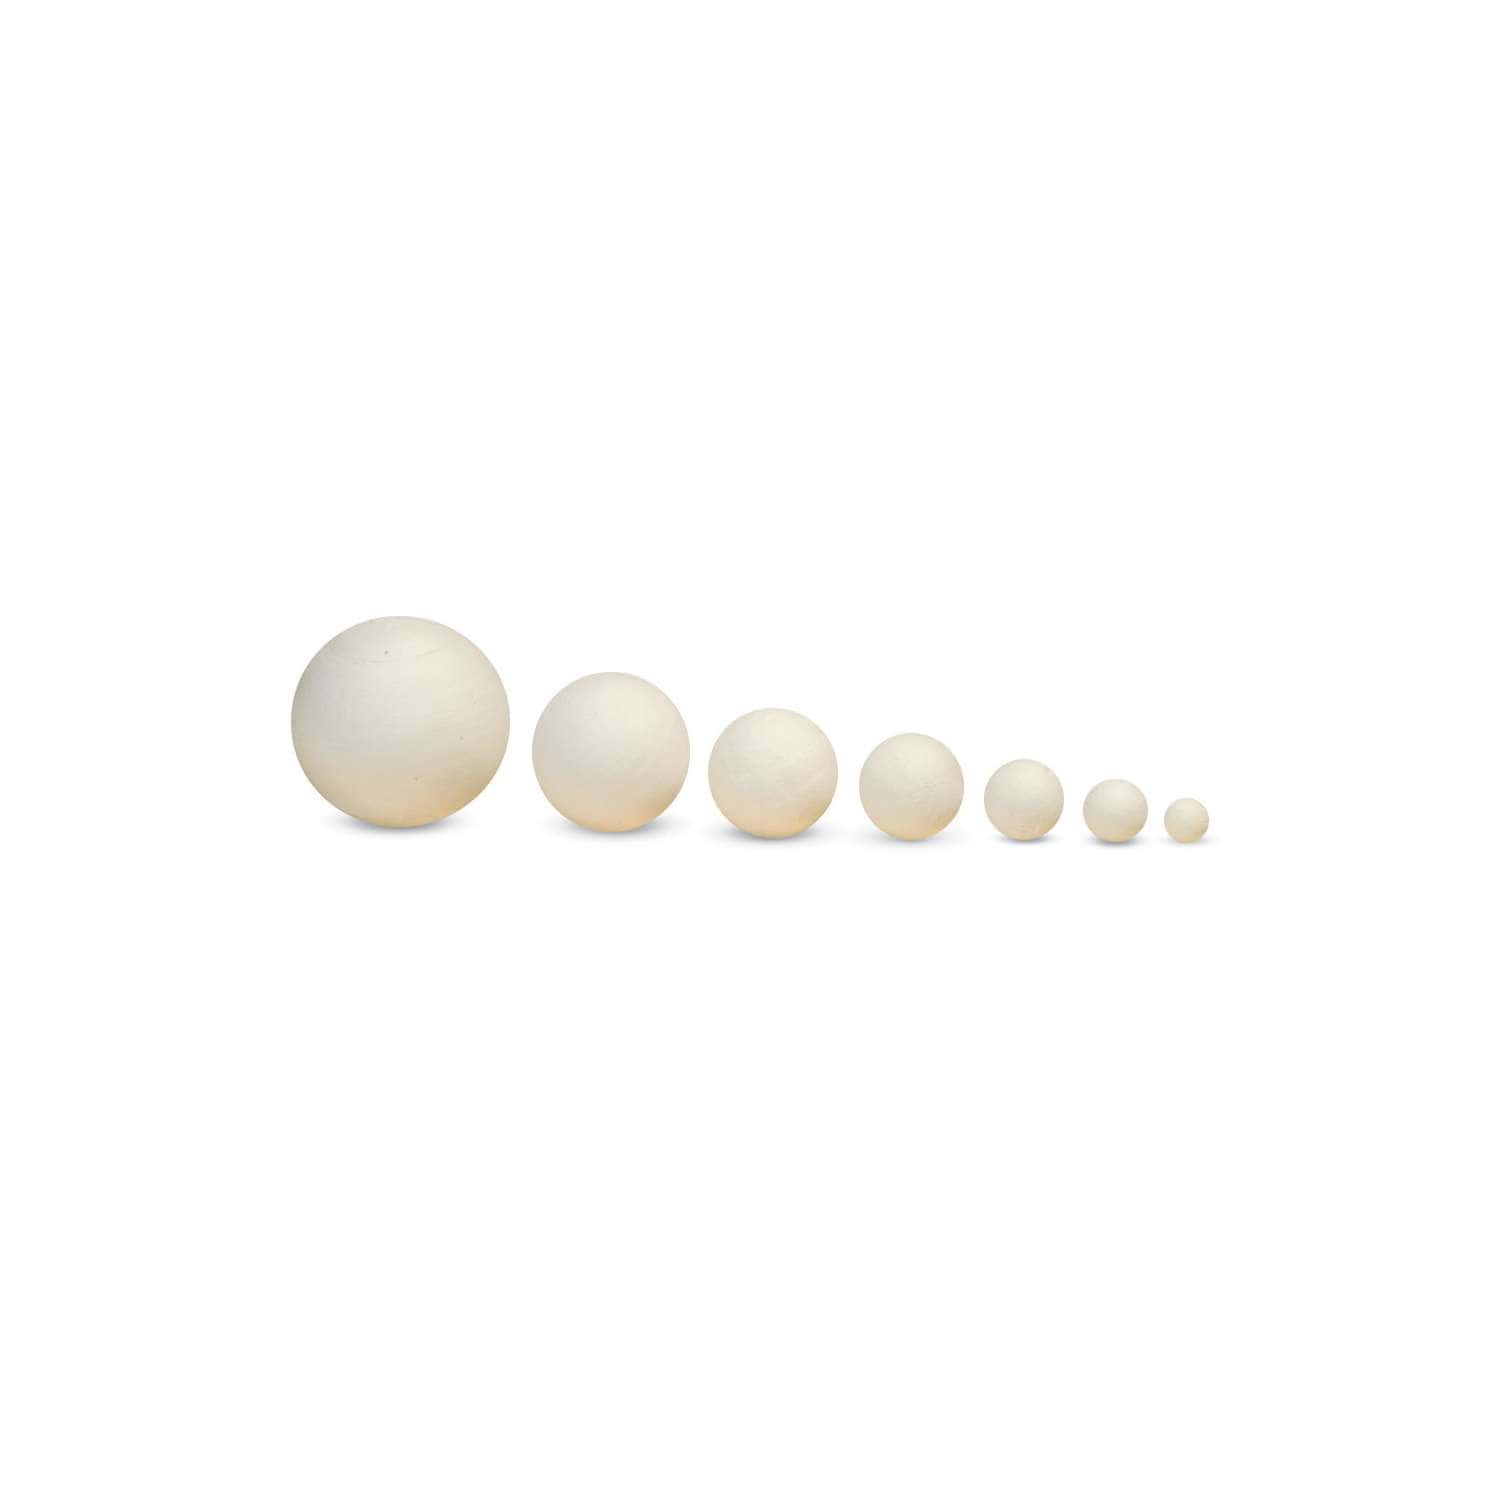 30 Boules de Coton blanc pour bricolages - Loisirs Créatifs